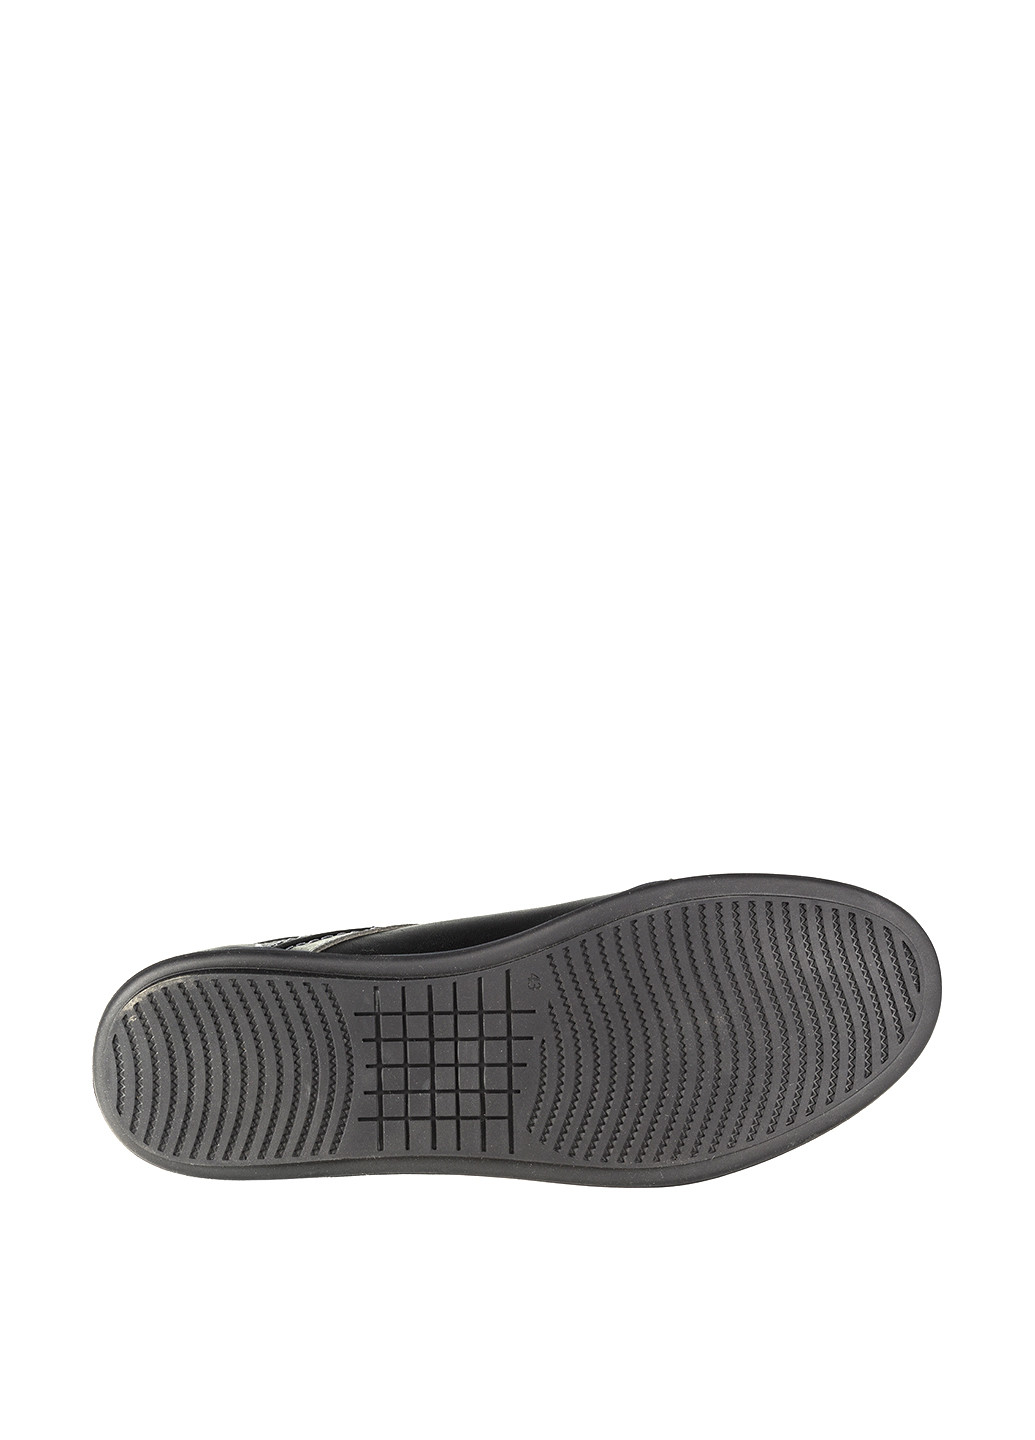 Черные спортивные туфли Westland на шнурках